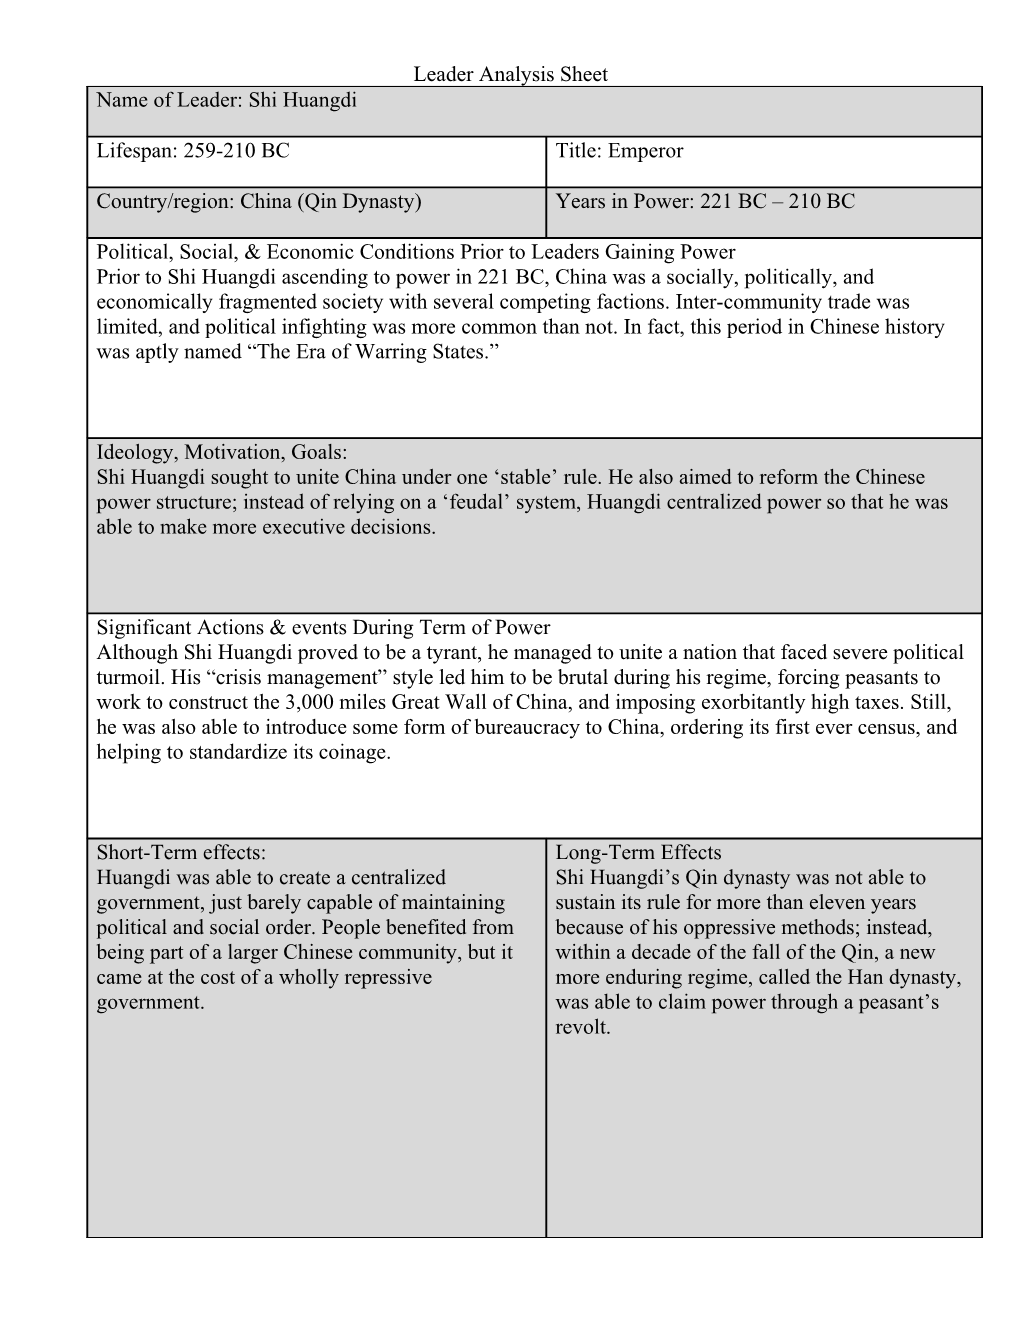 Leader Analysis Sheet s1